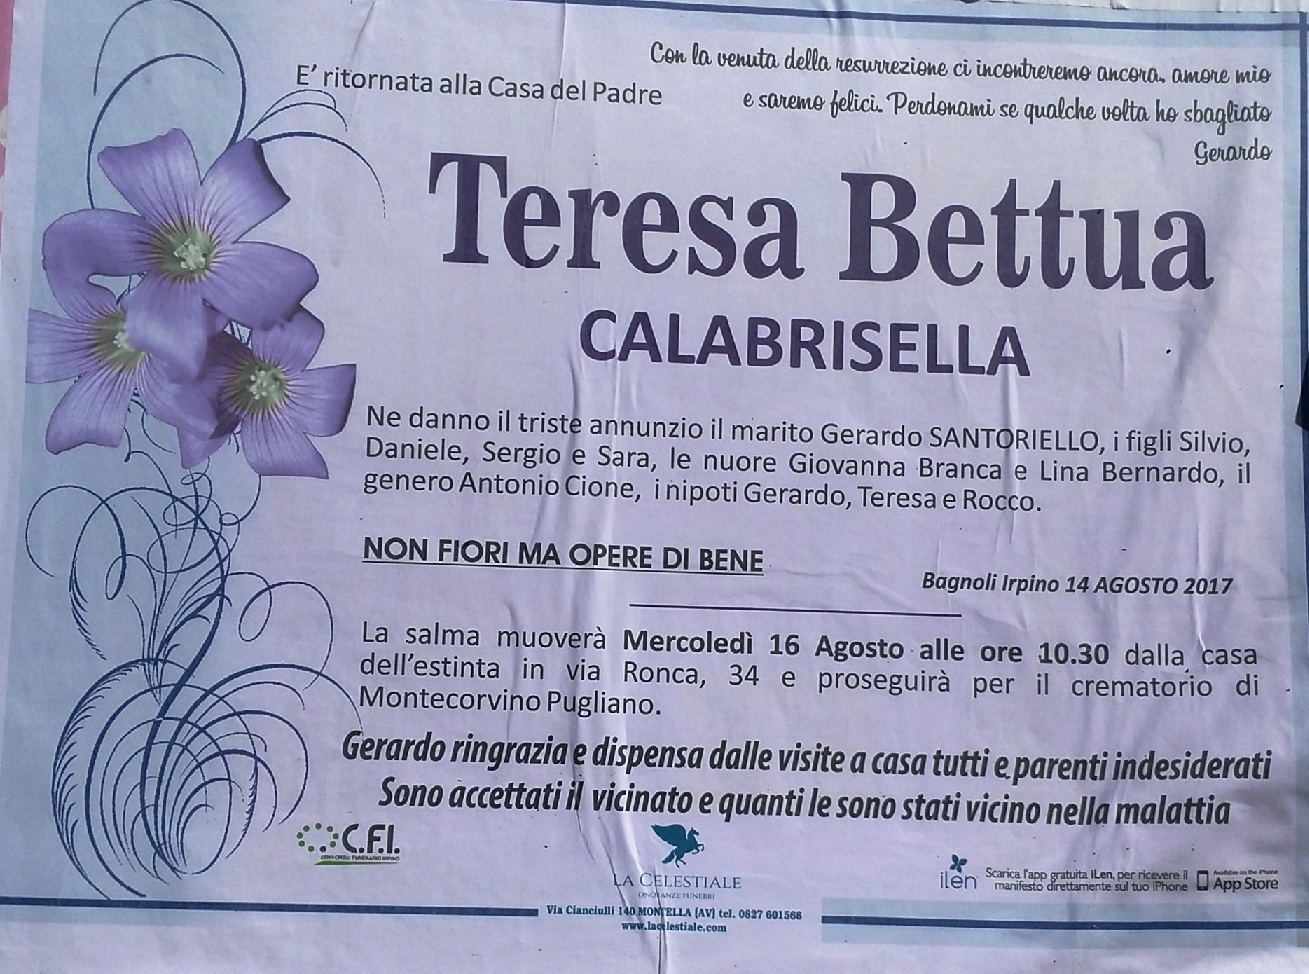 Teresa-Bettua-Calabrisella